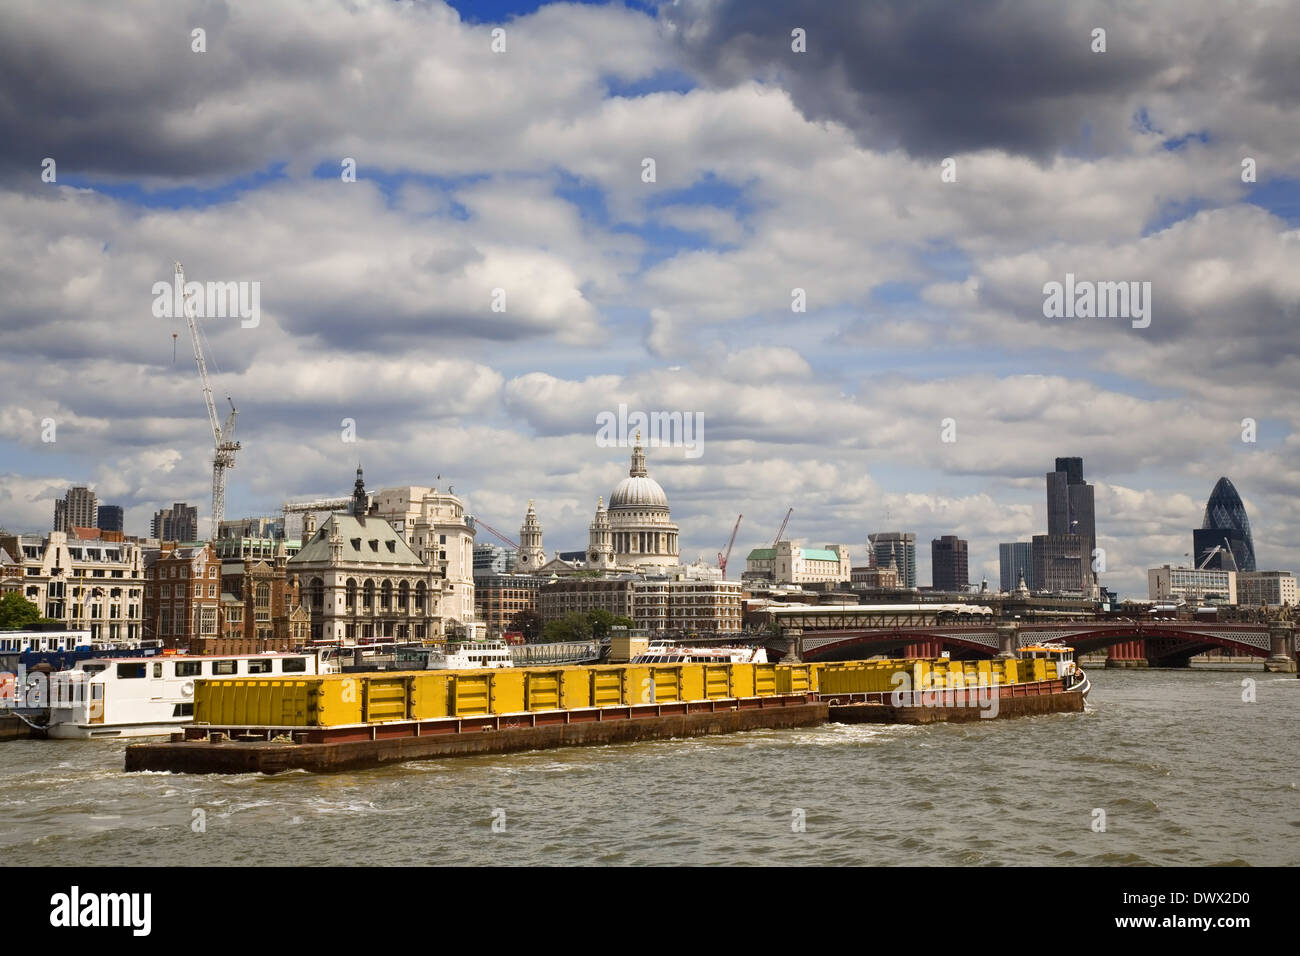 Vue d'une barge en tirant des conteneurs sur la Tamise avec le City de Londres derrière. Prises en 2006 Banque D'Images